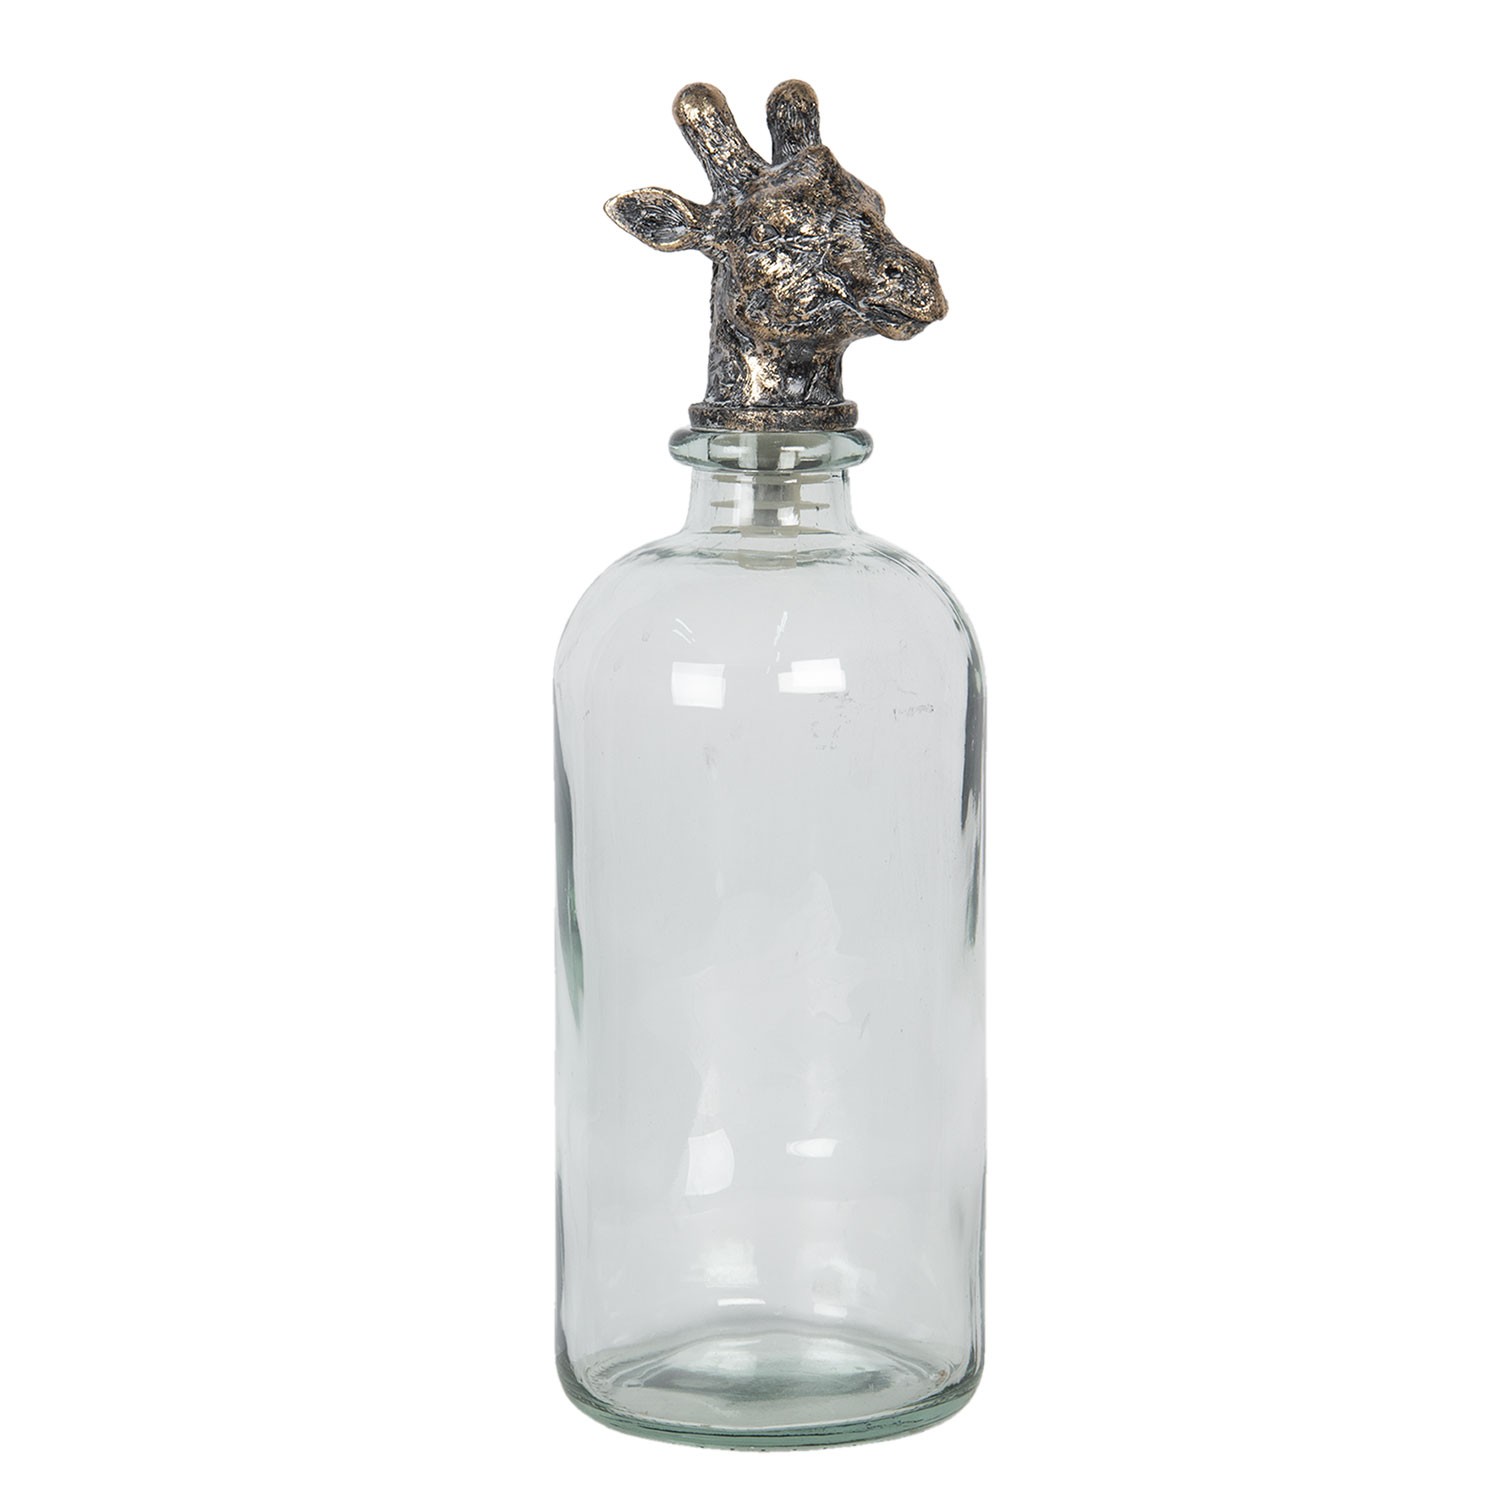 Skleněná láhev se zátkou ve tvaru žirafy - 11*11*33 cm 6GL2820